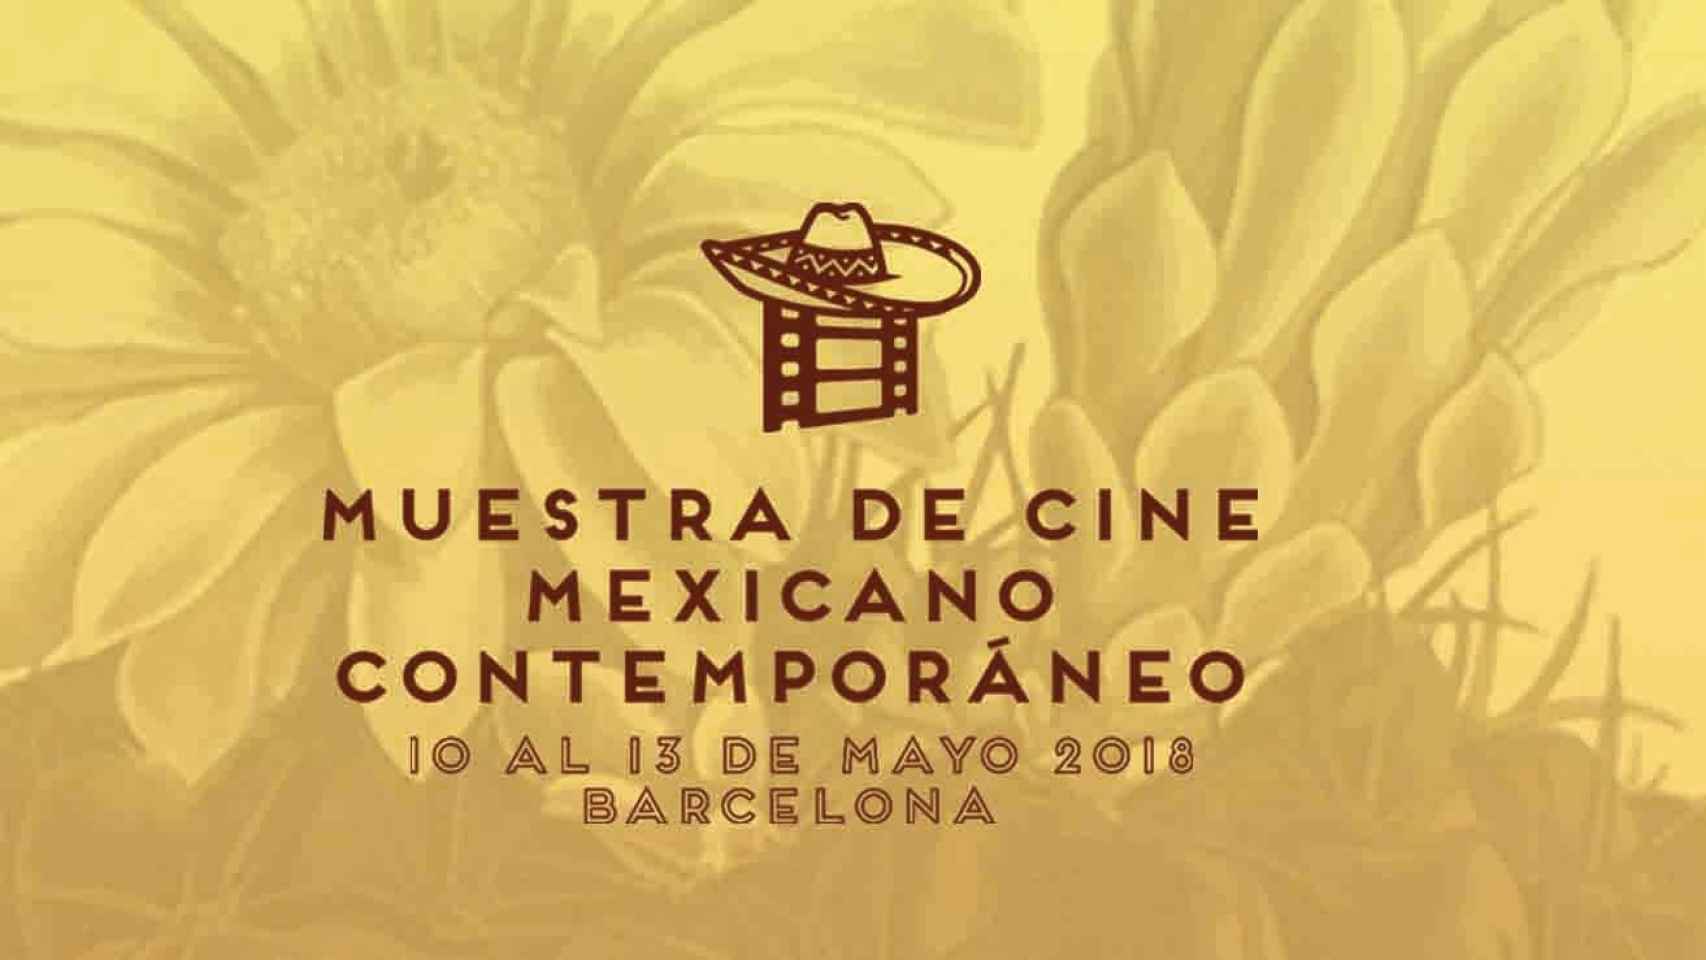 I Muestra de cine mexicano contemporáneo en Barcelona